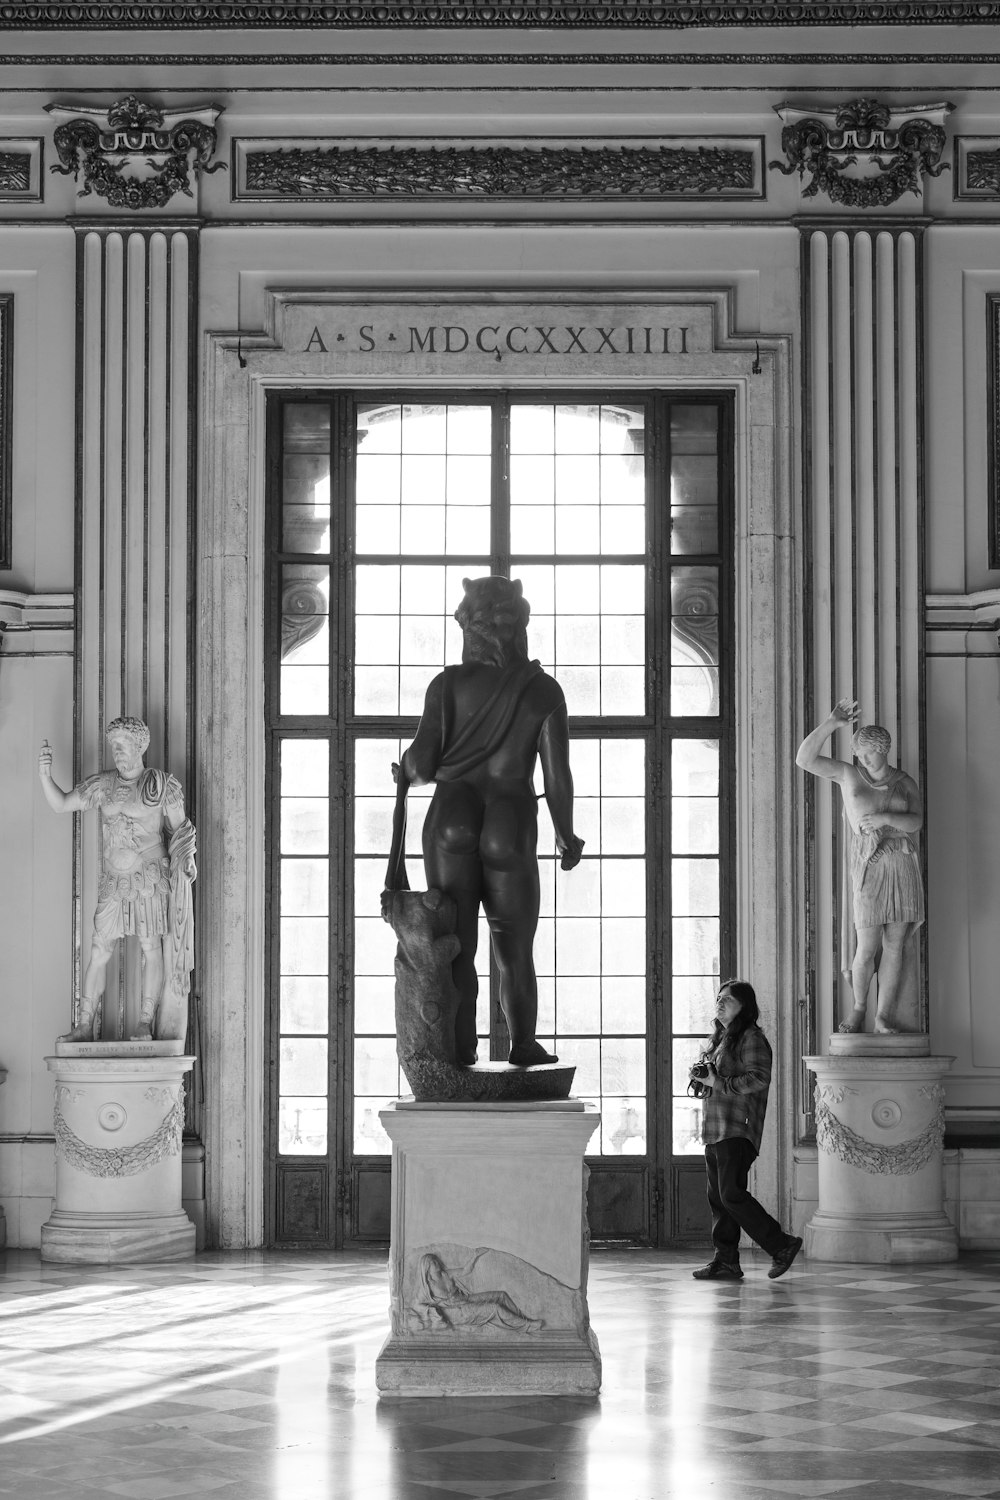 Una foto en blanco y negro de una estatua en un edificio